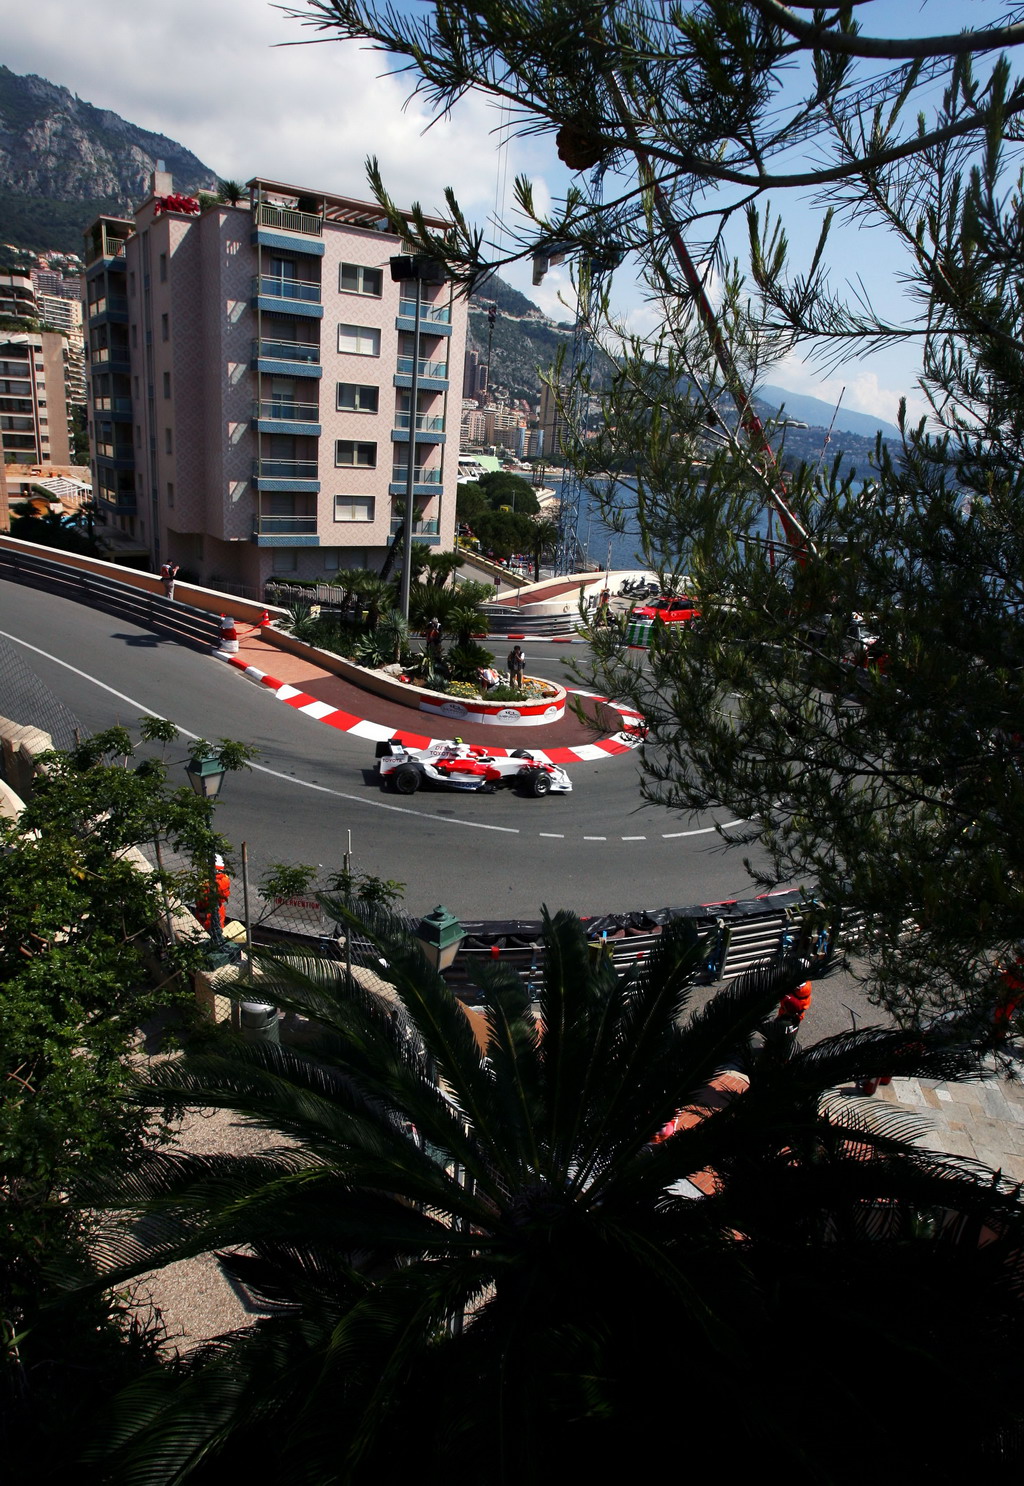 GP MONACO, Timo Glock (GER) Toyota TF108.
Formula One World Championship, Rd 6, Monaco Grand Prix, Practice Day, Monte-Carlo, Monaco, Giovedi' 22 May 2008.
